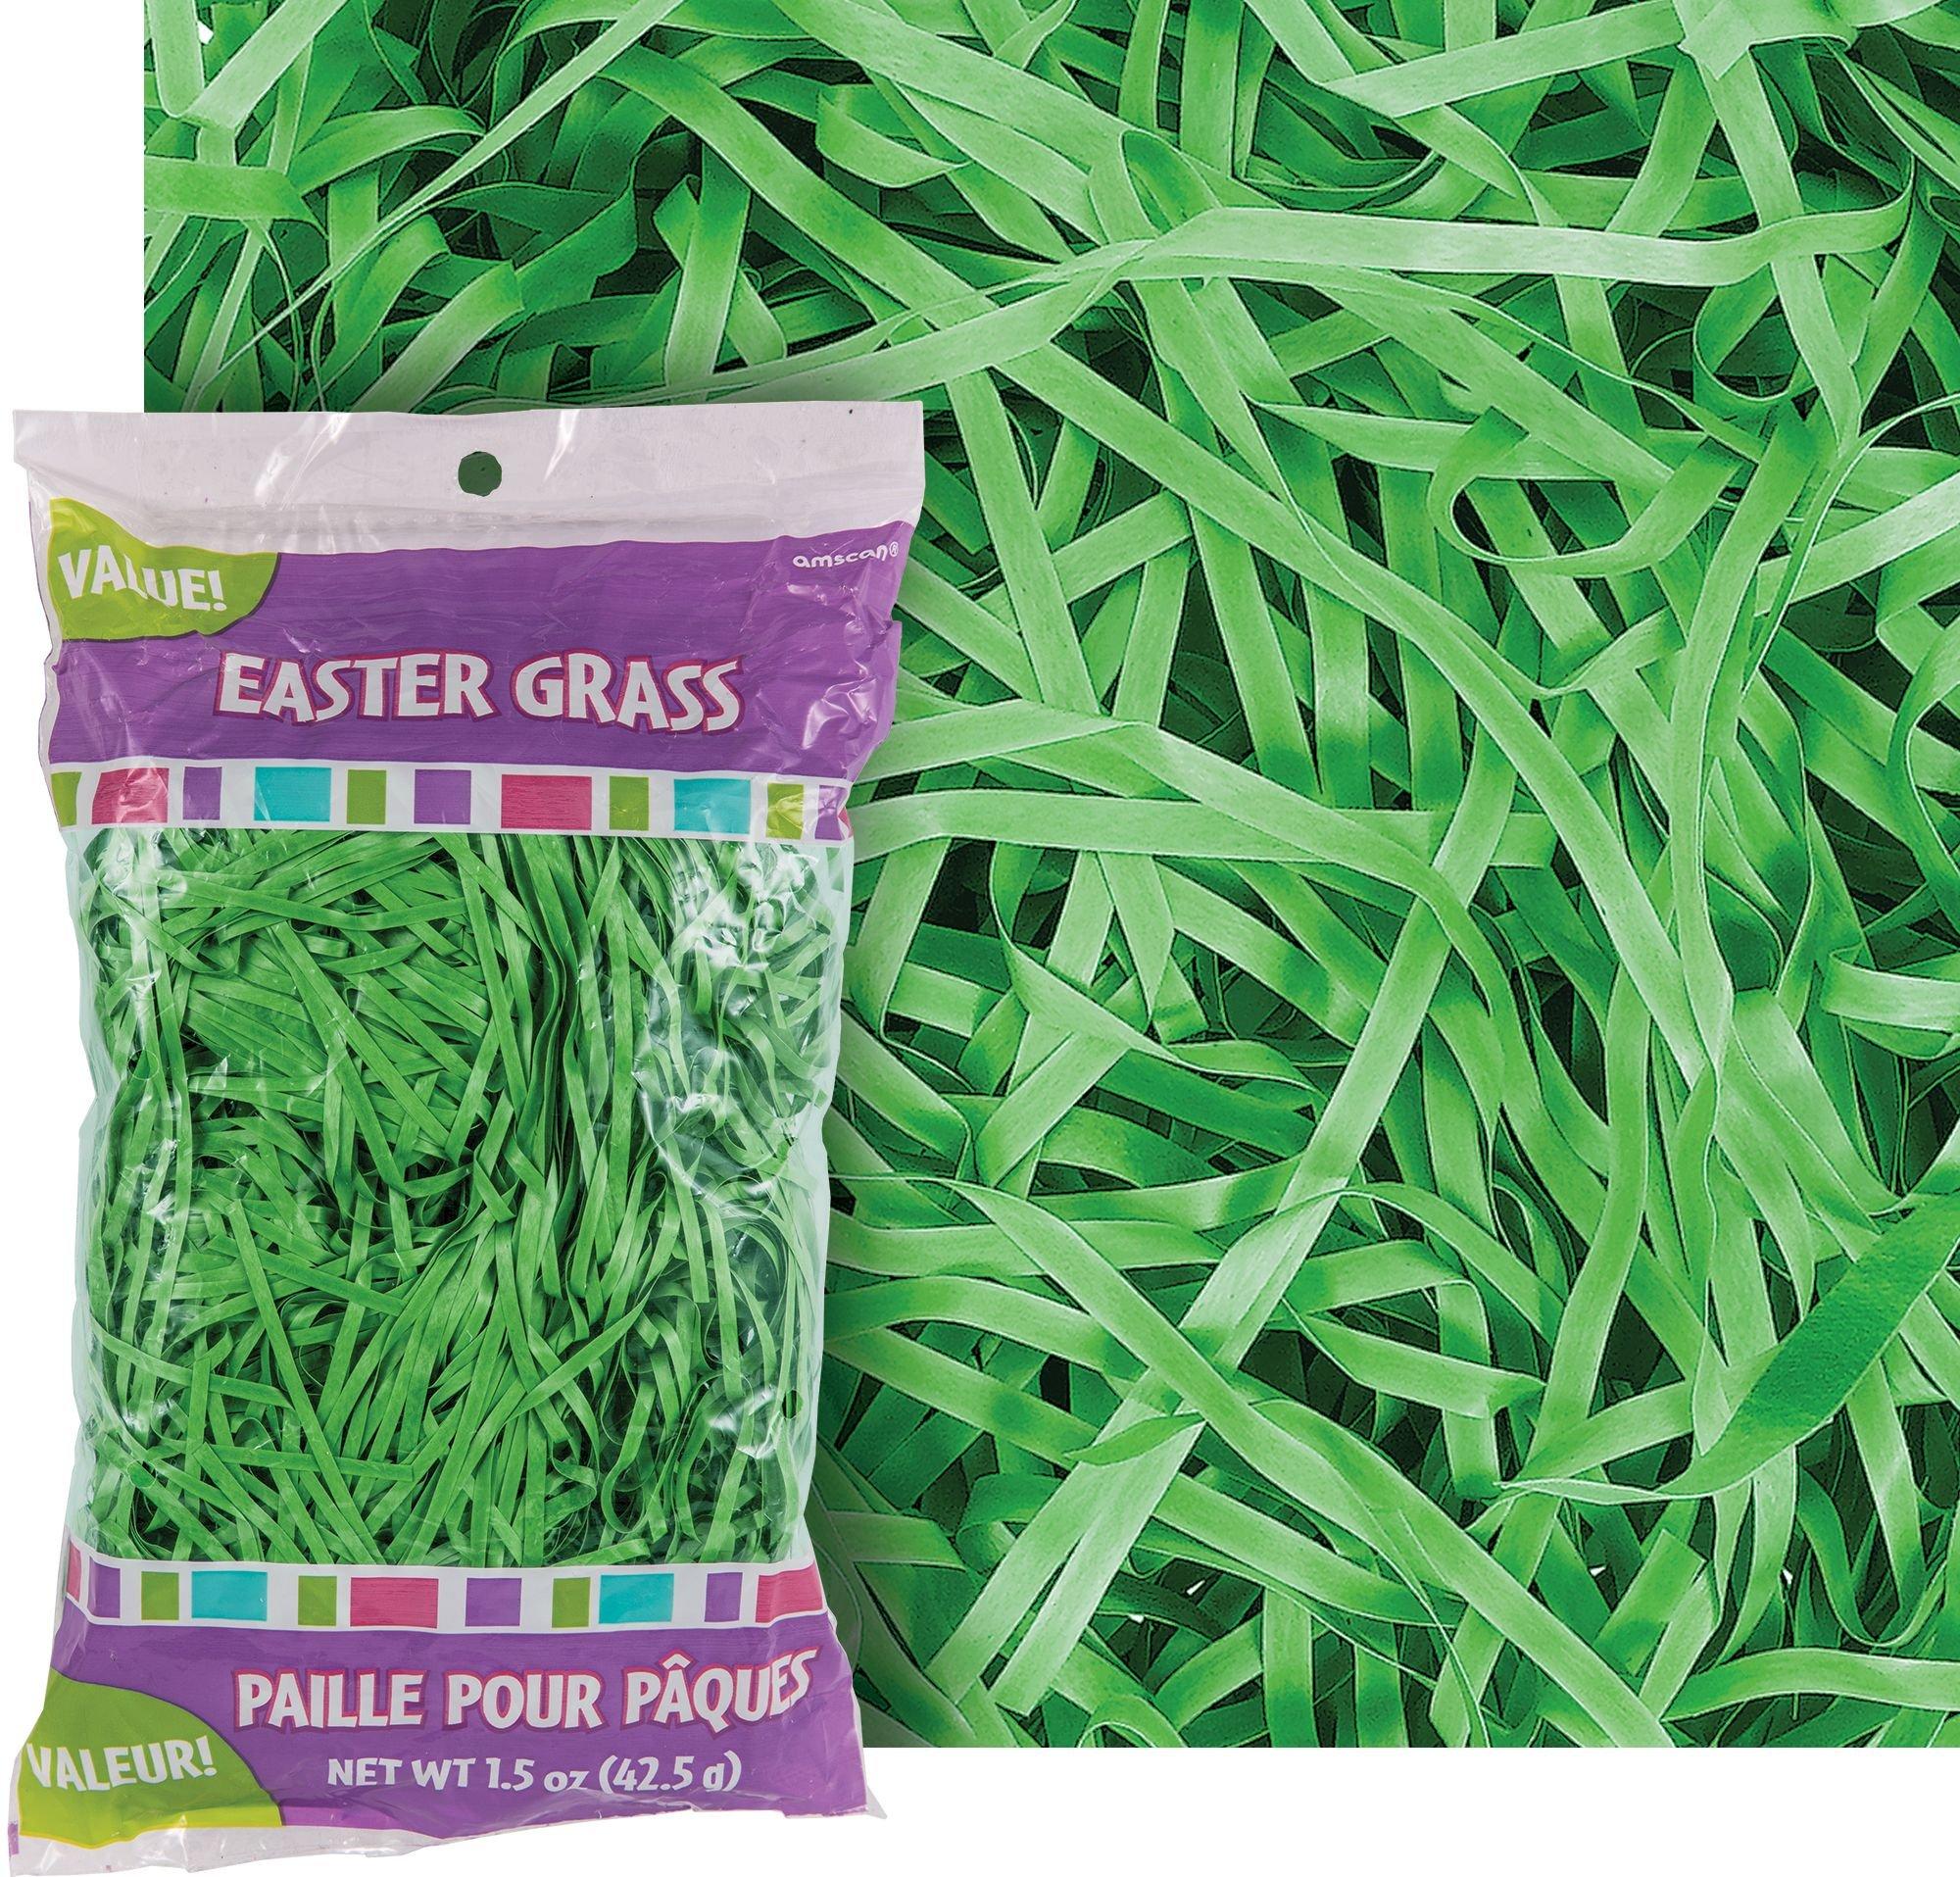 Easter Grass & Basket Grass